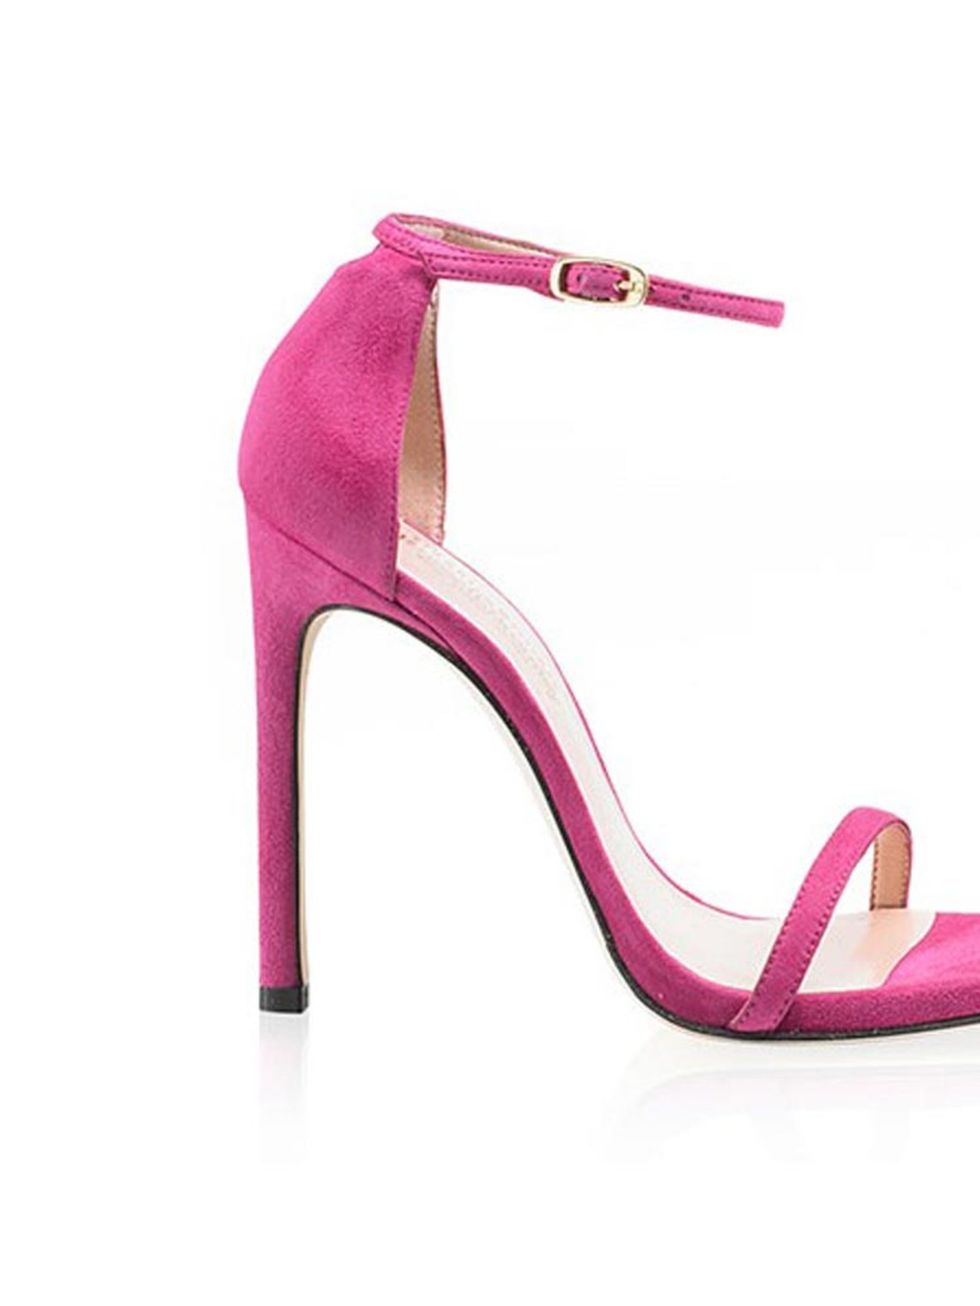 High heels, Magenta, Pink, Purple, Basic pump, Foot, Violet, Lavender, Sandal, Court shoe, 